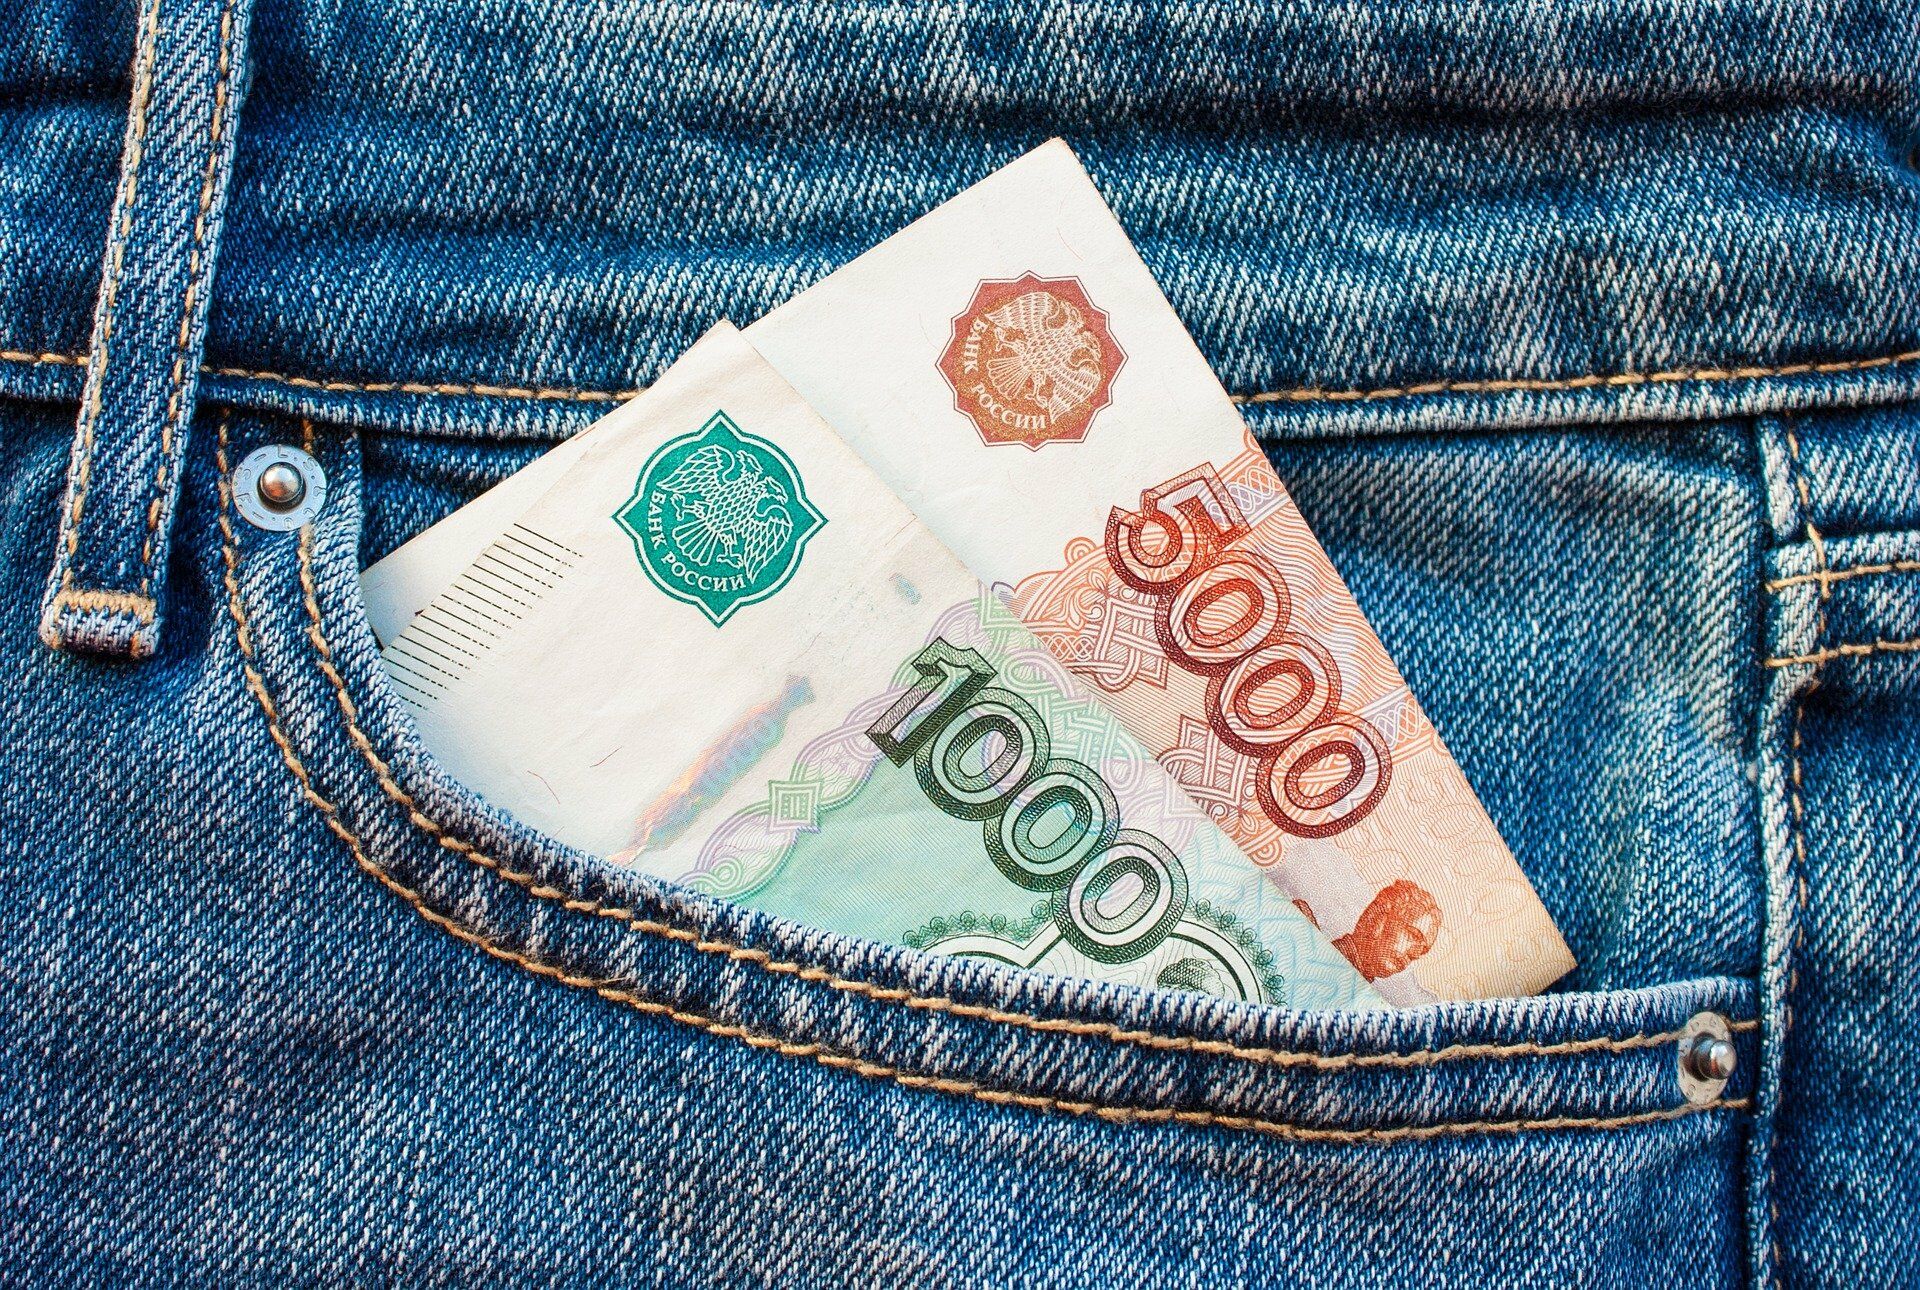 Около 150 тысяч челнинских пенсионеров получат выплату в 10 тыс. руб.